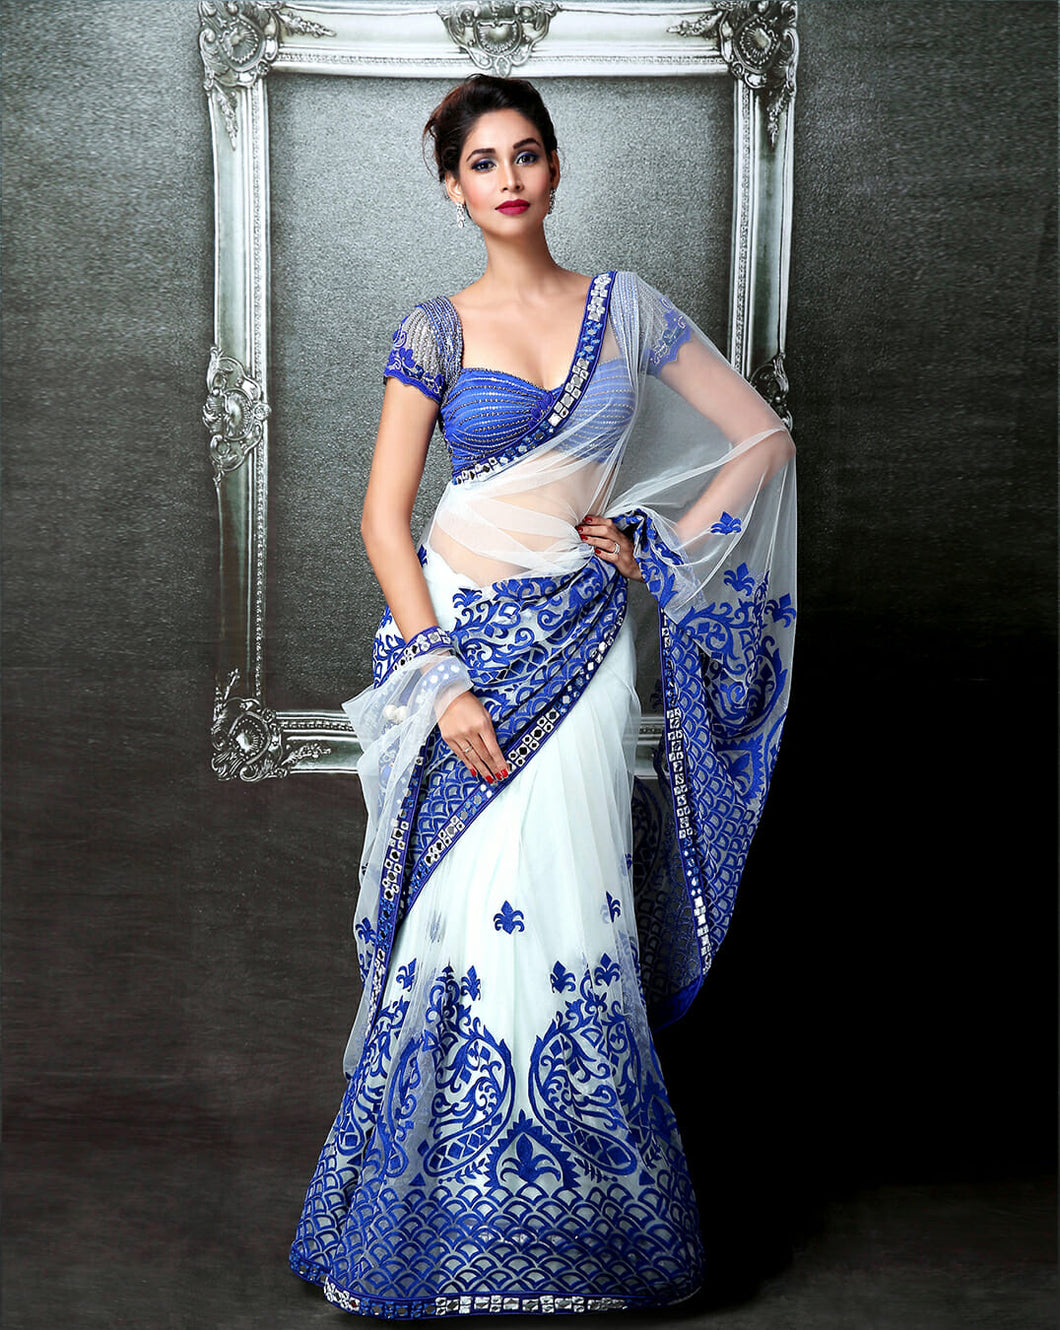 Cobalt Blue Sari - Archana Kochhar India